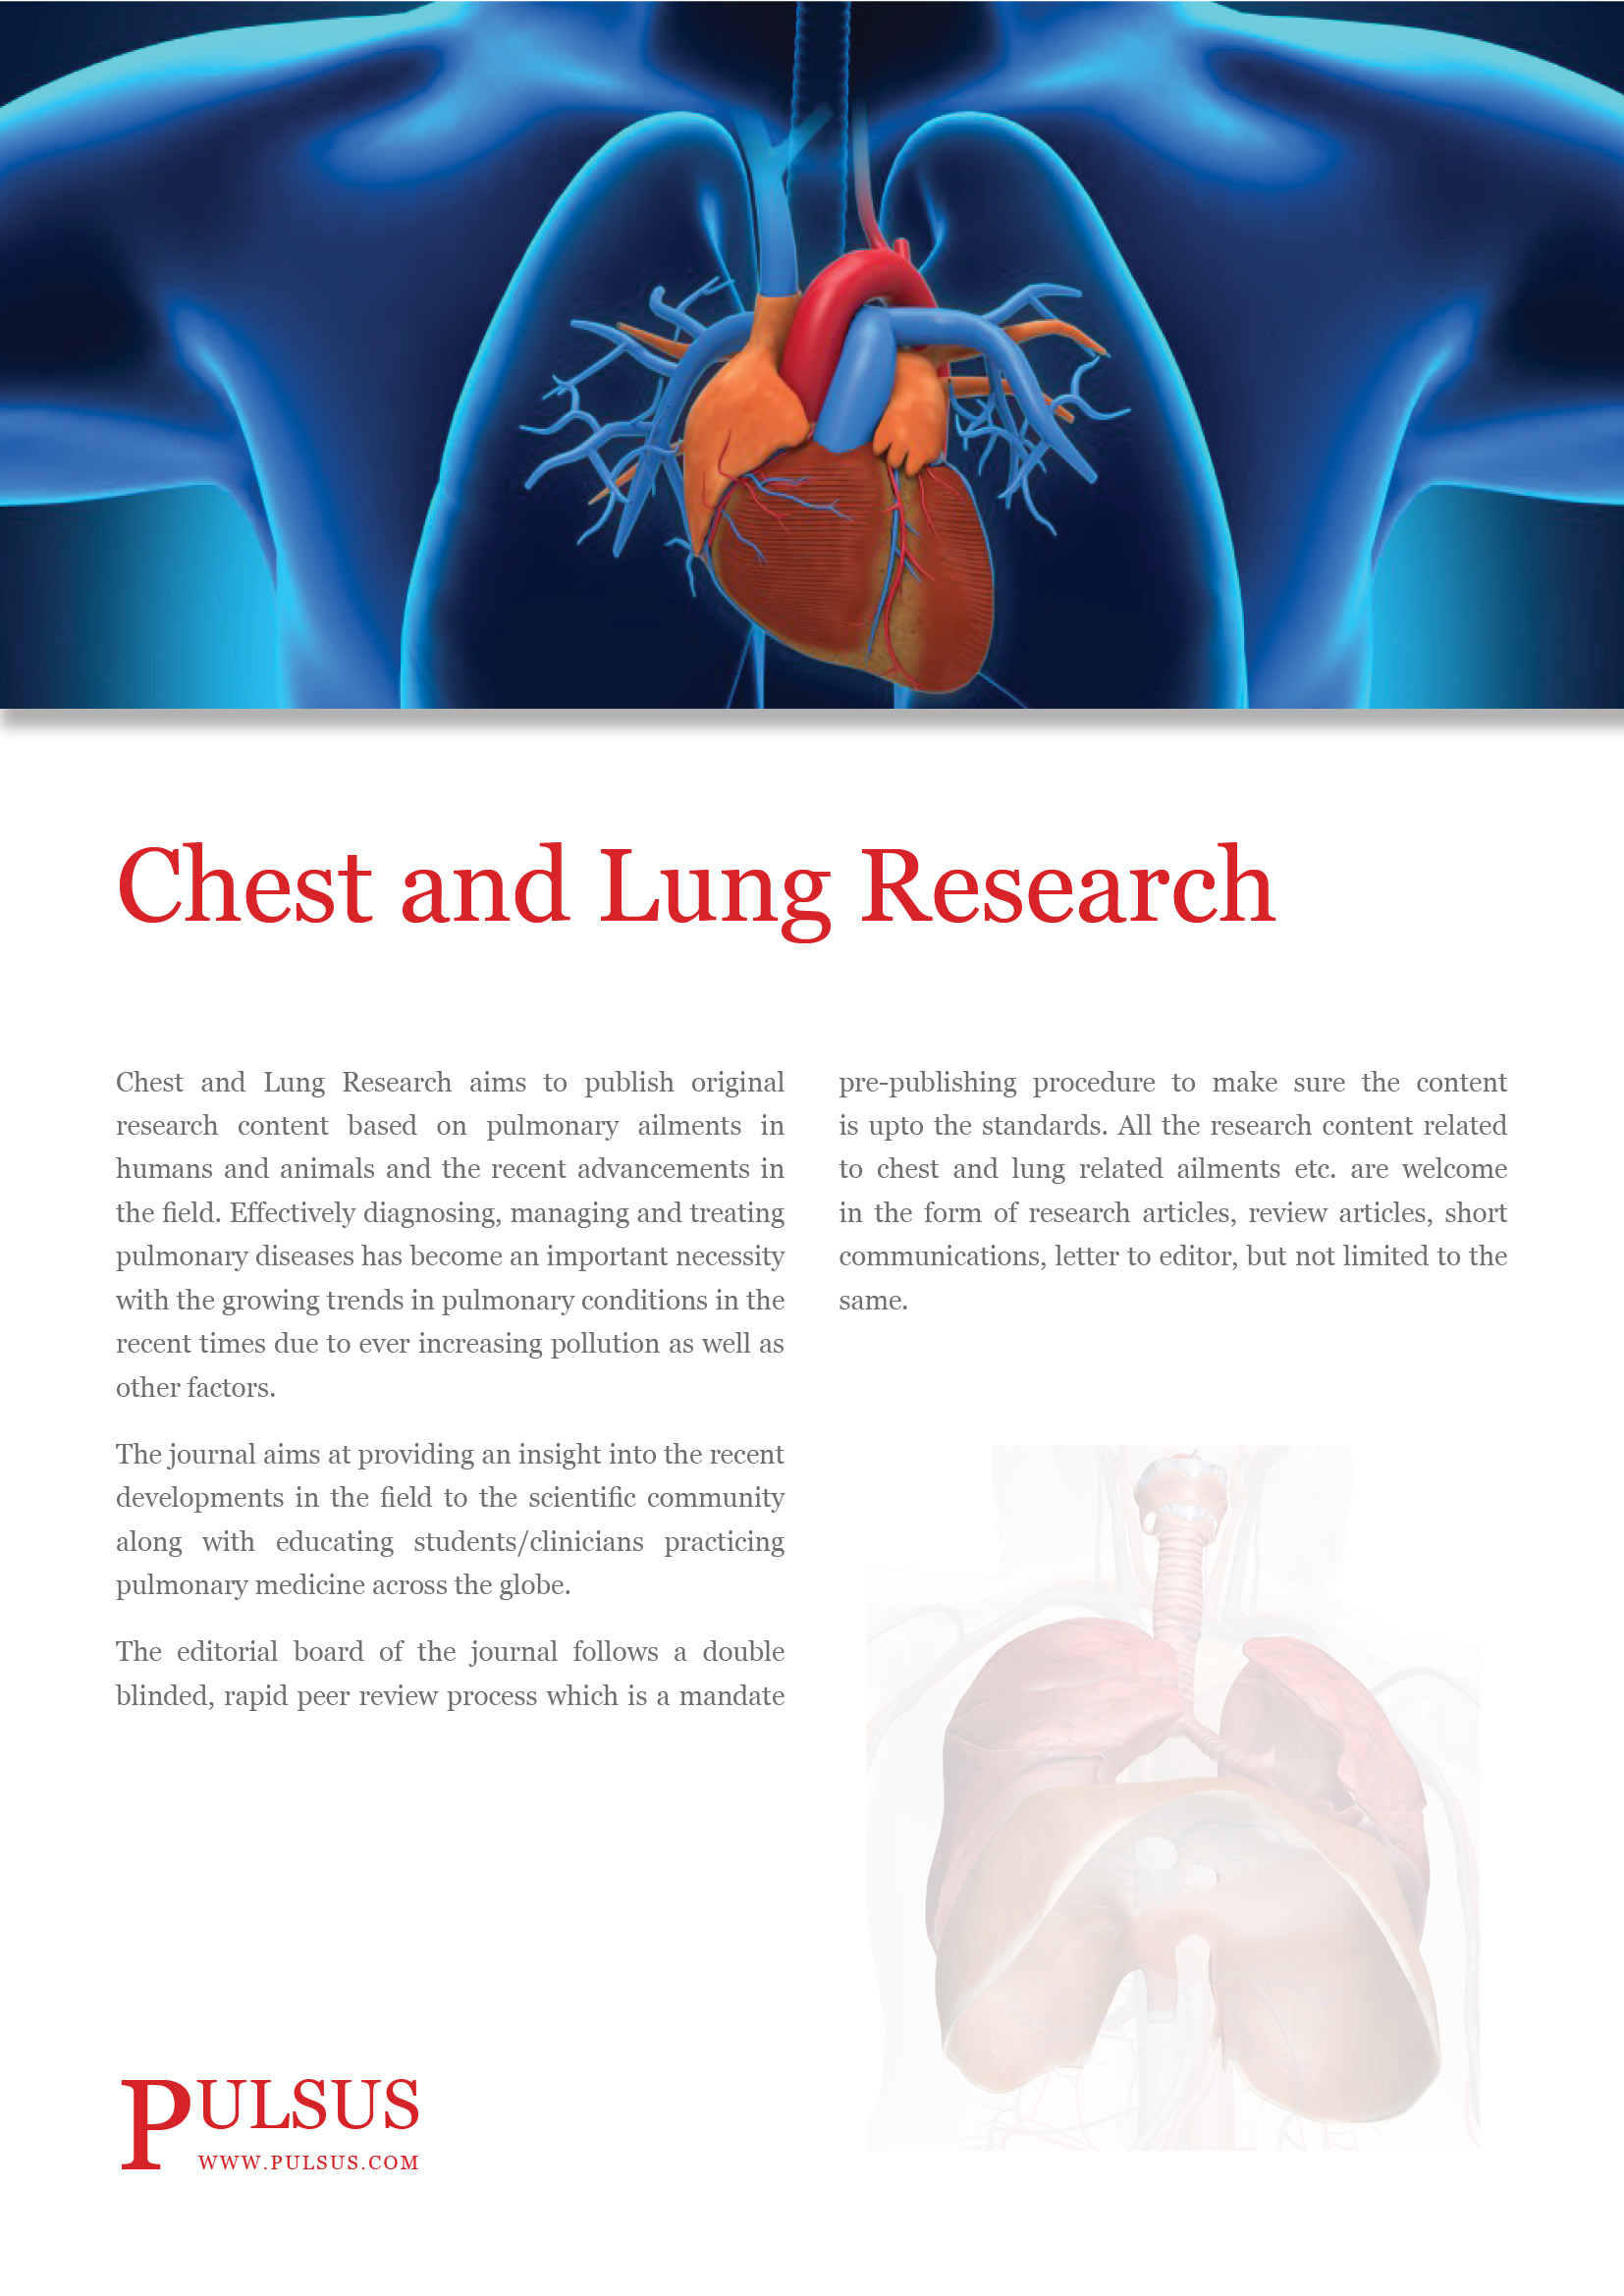 Recherche sur la poitrine et les poumons